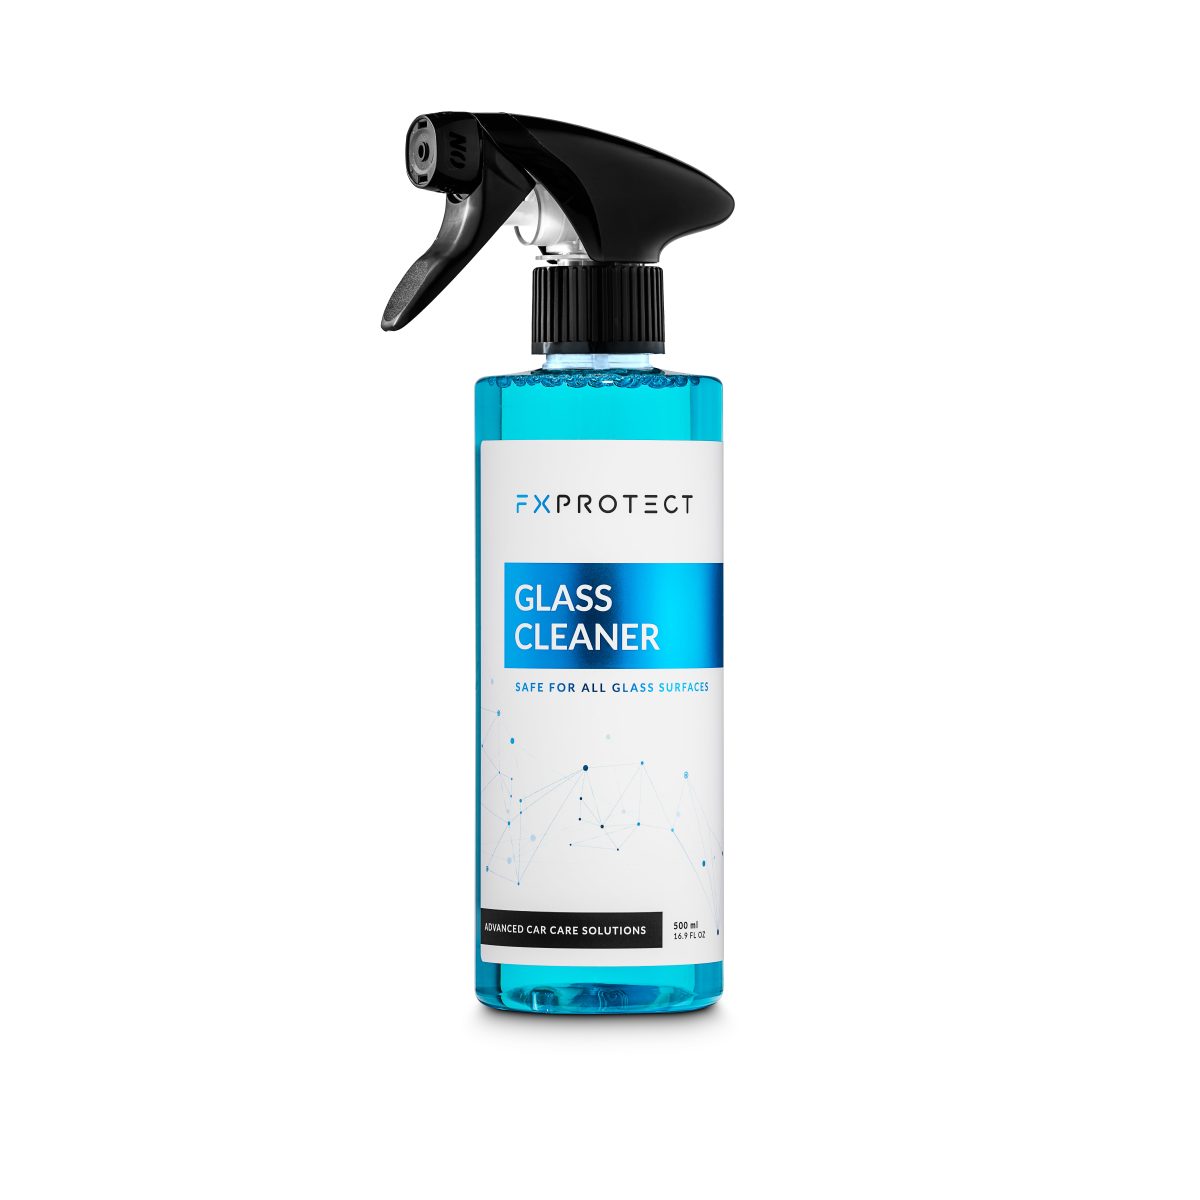 FX Protect Glass Cleaner sredstvo za pranje stakla je proizvod visoke učinkovitosti i jednostavnosti korištenja za redovito čišćenje svih staklenih površina.